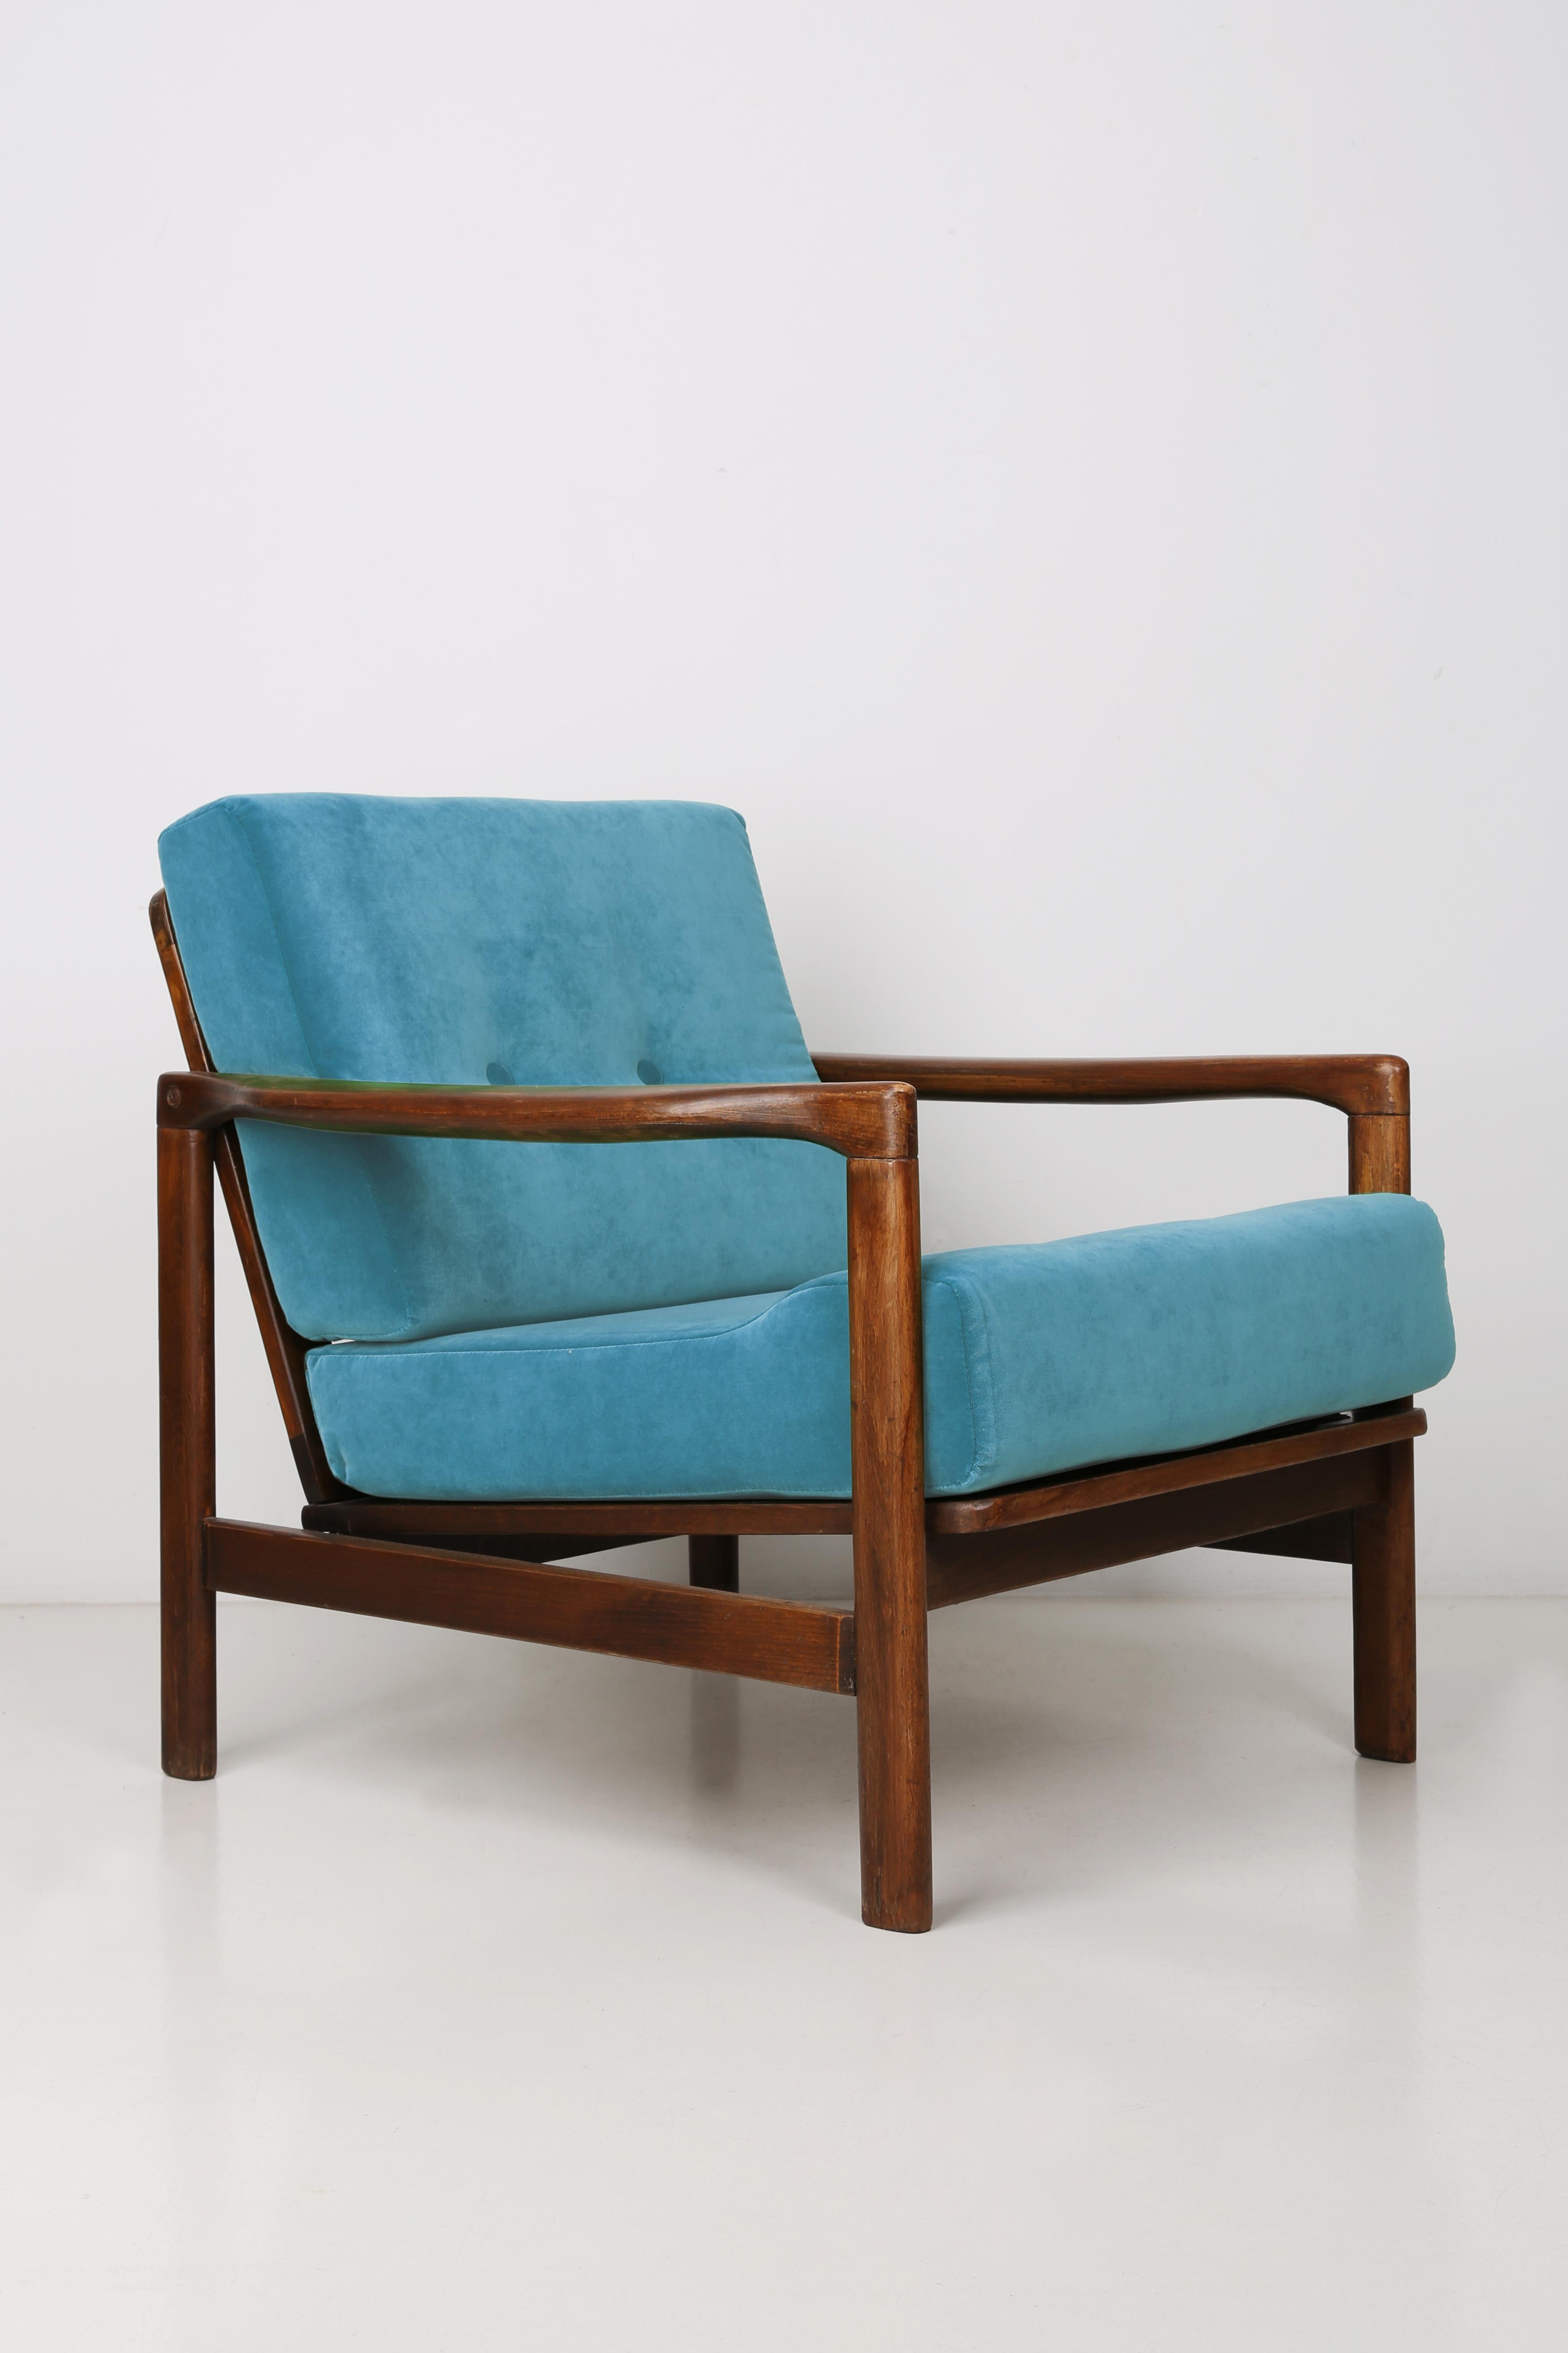 Der Sessel B-7522 wurde in den 1960er Jahren von Zenon Baczyk entworfen und von den Swarzedz-Möbelfabriken in Polen hergestellt. Die Möbel sind in perfektem Zustand, nachdem sie vollständig gepolstert und renoviert wurden. Stabiler und sehr